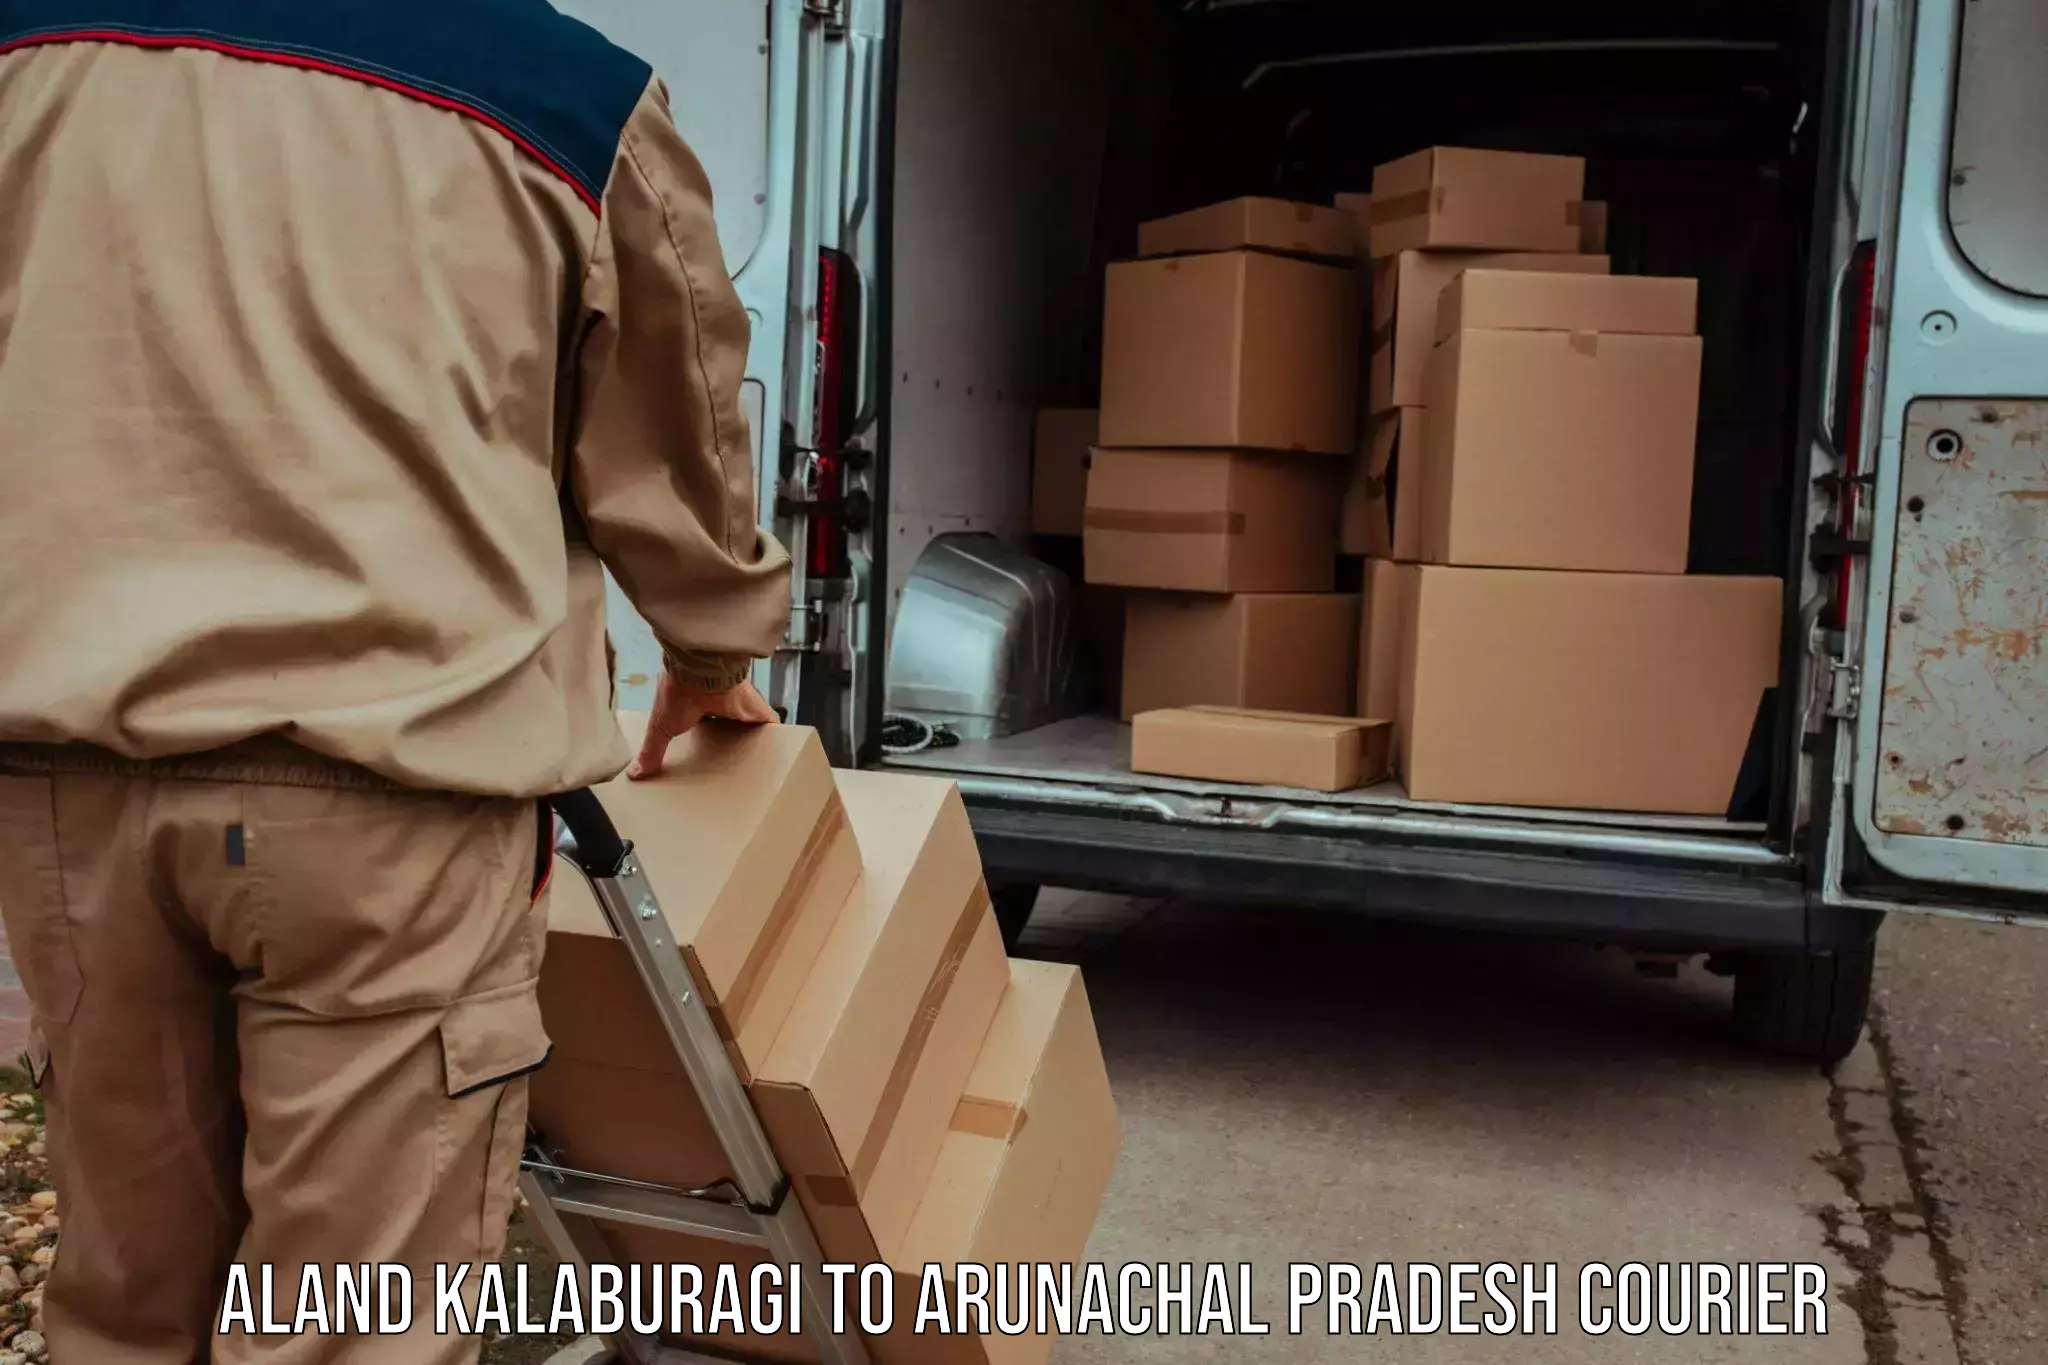 International courier rates in Aland Kalaburagi to Tirap